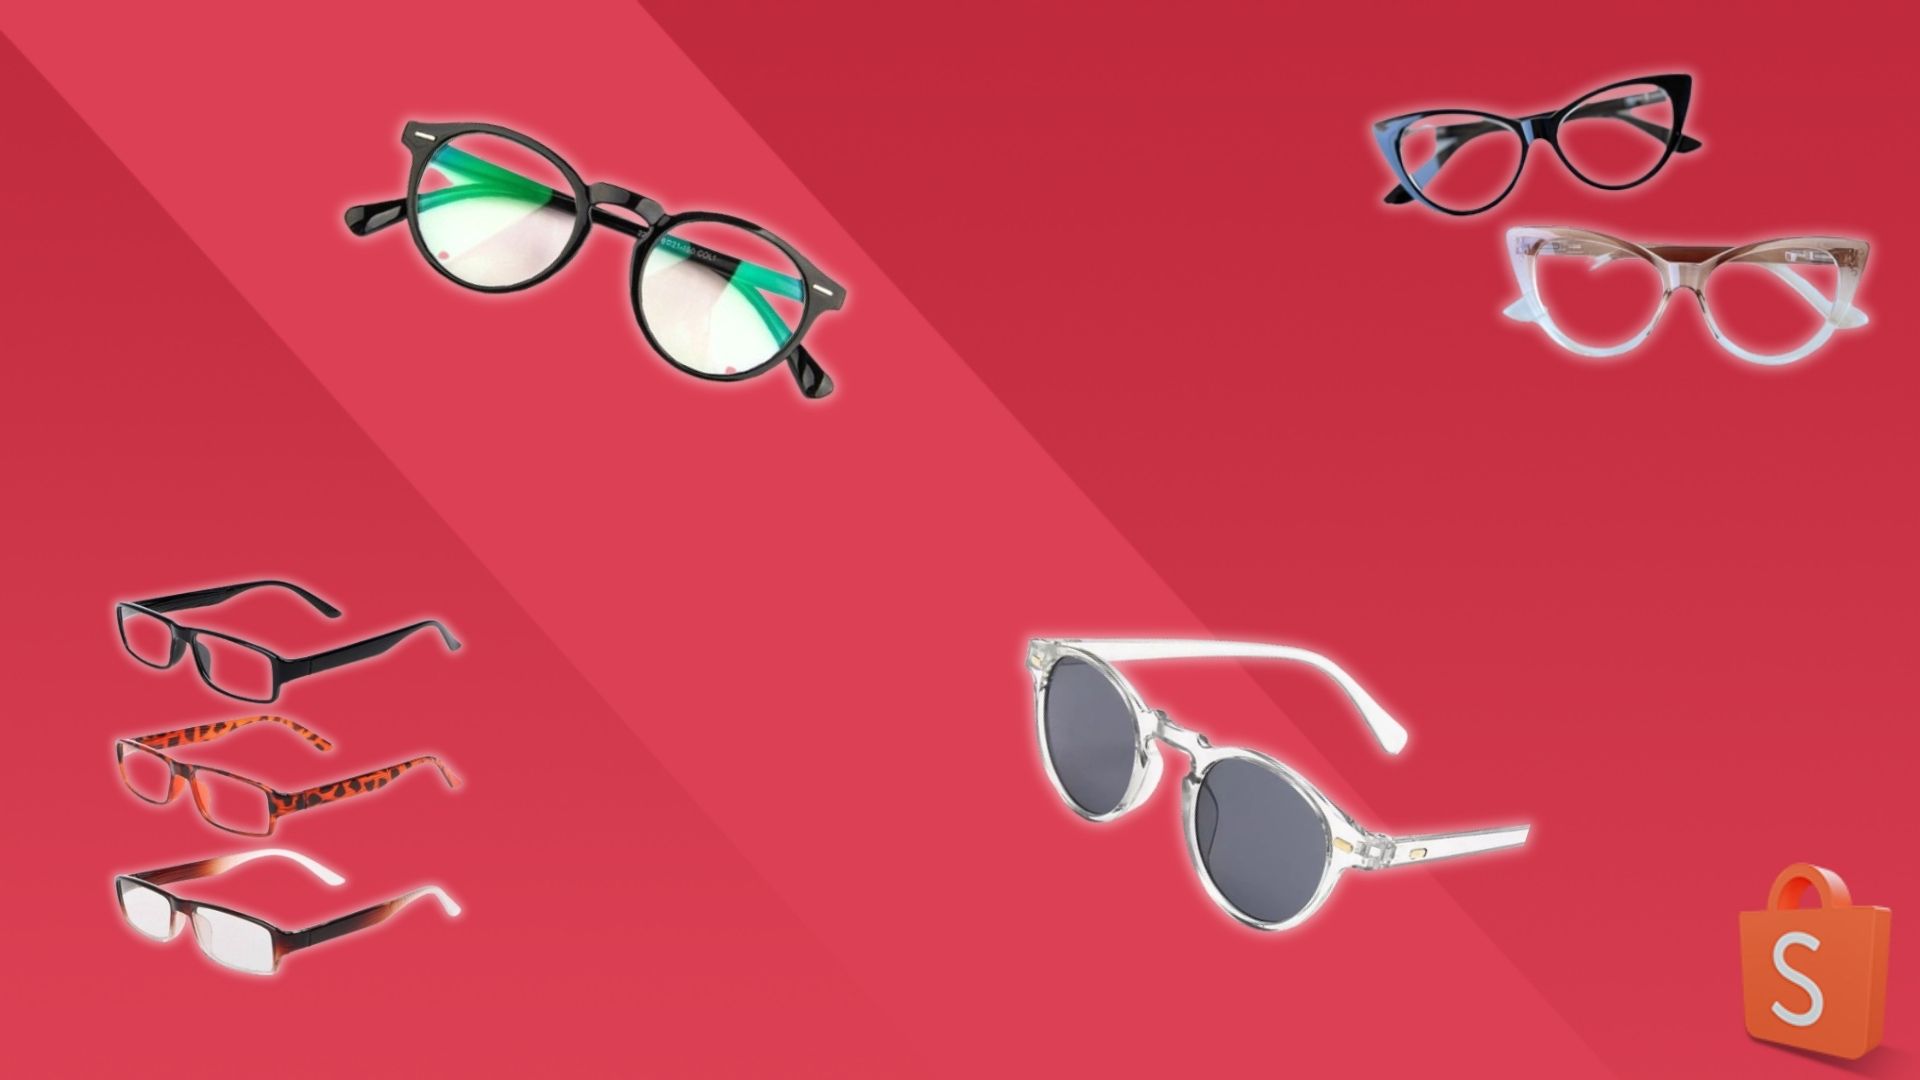 Guia do óculos: como escolher armação, lente e proteção